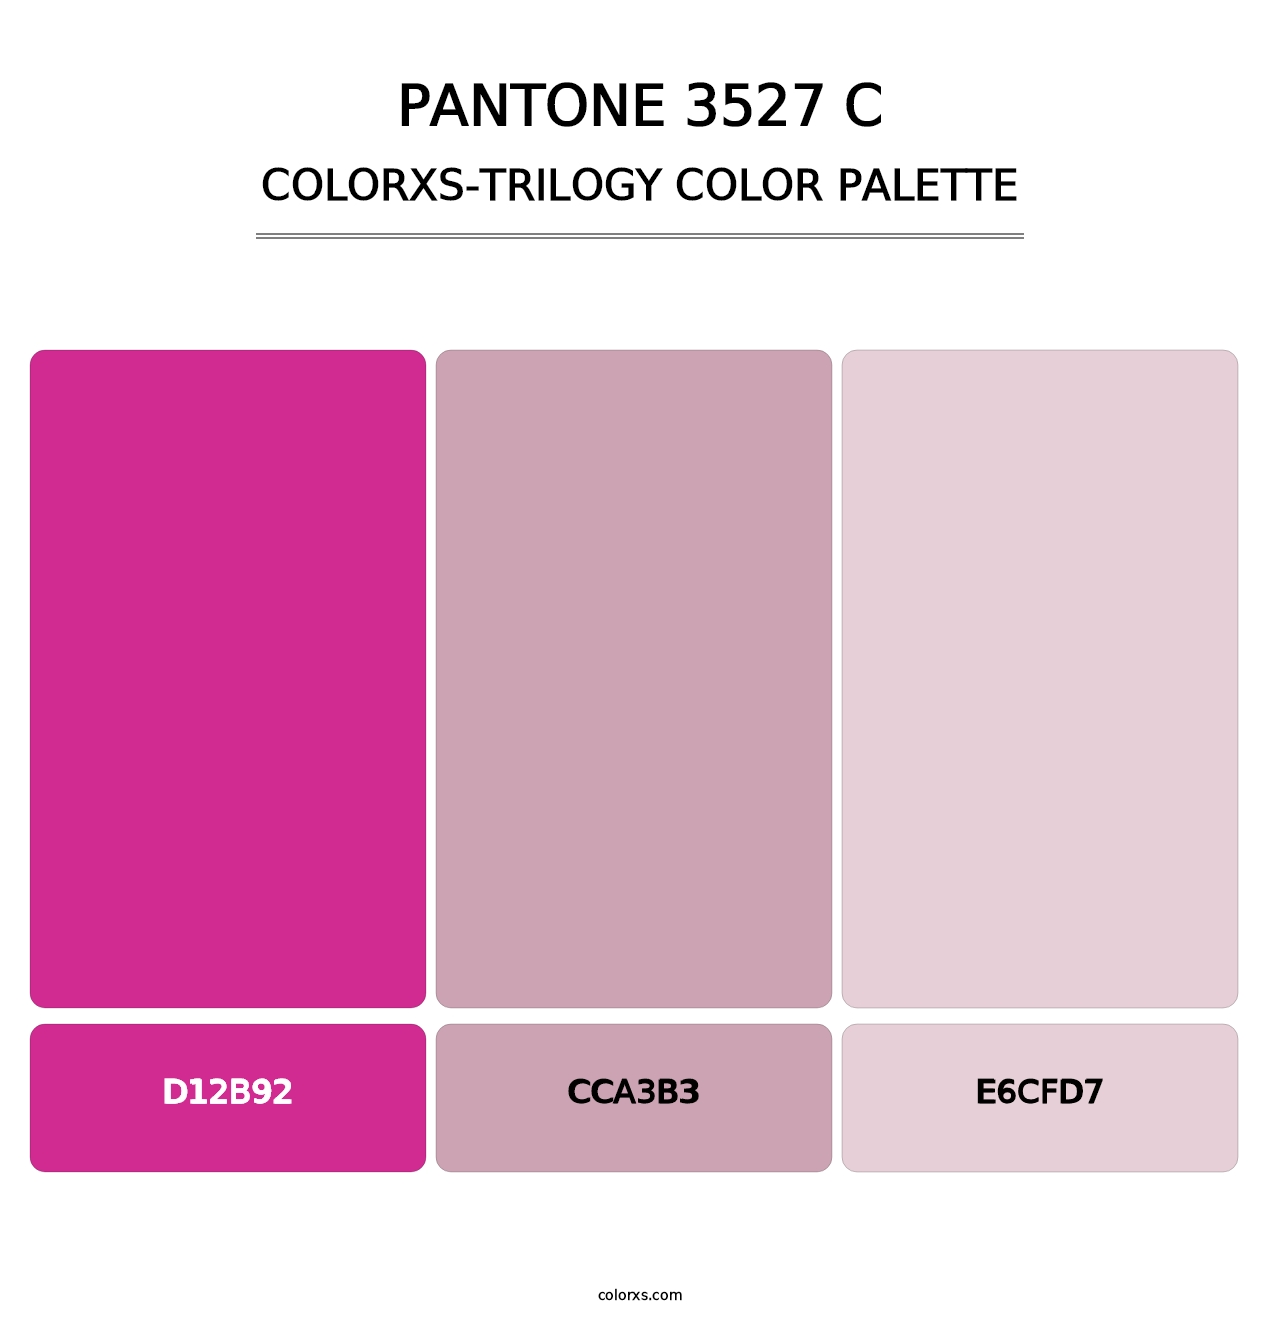 PANTONE 3527 C - Colorxs Trilogy Palette